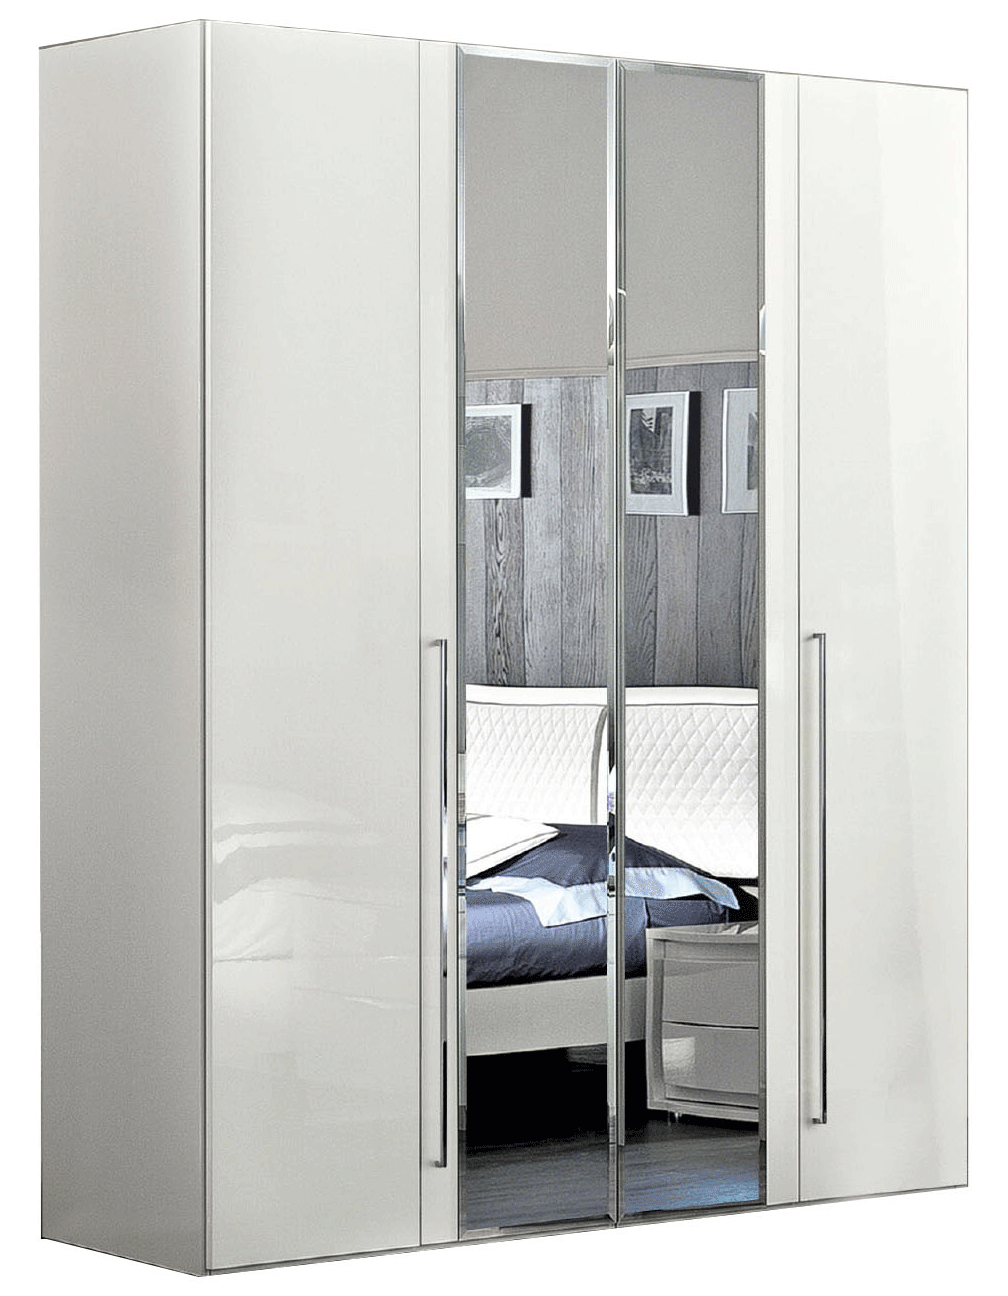 Bedroom Furniture Mirrors Dama Bianca 4 Door Glass Doors Wardrobe White